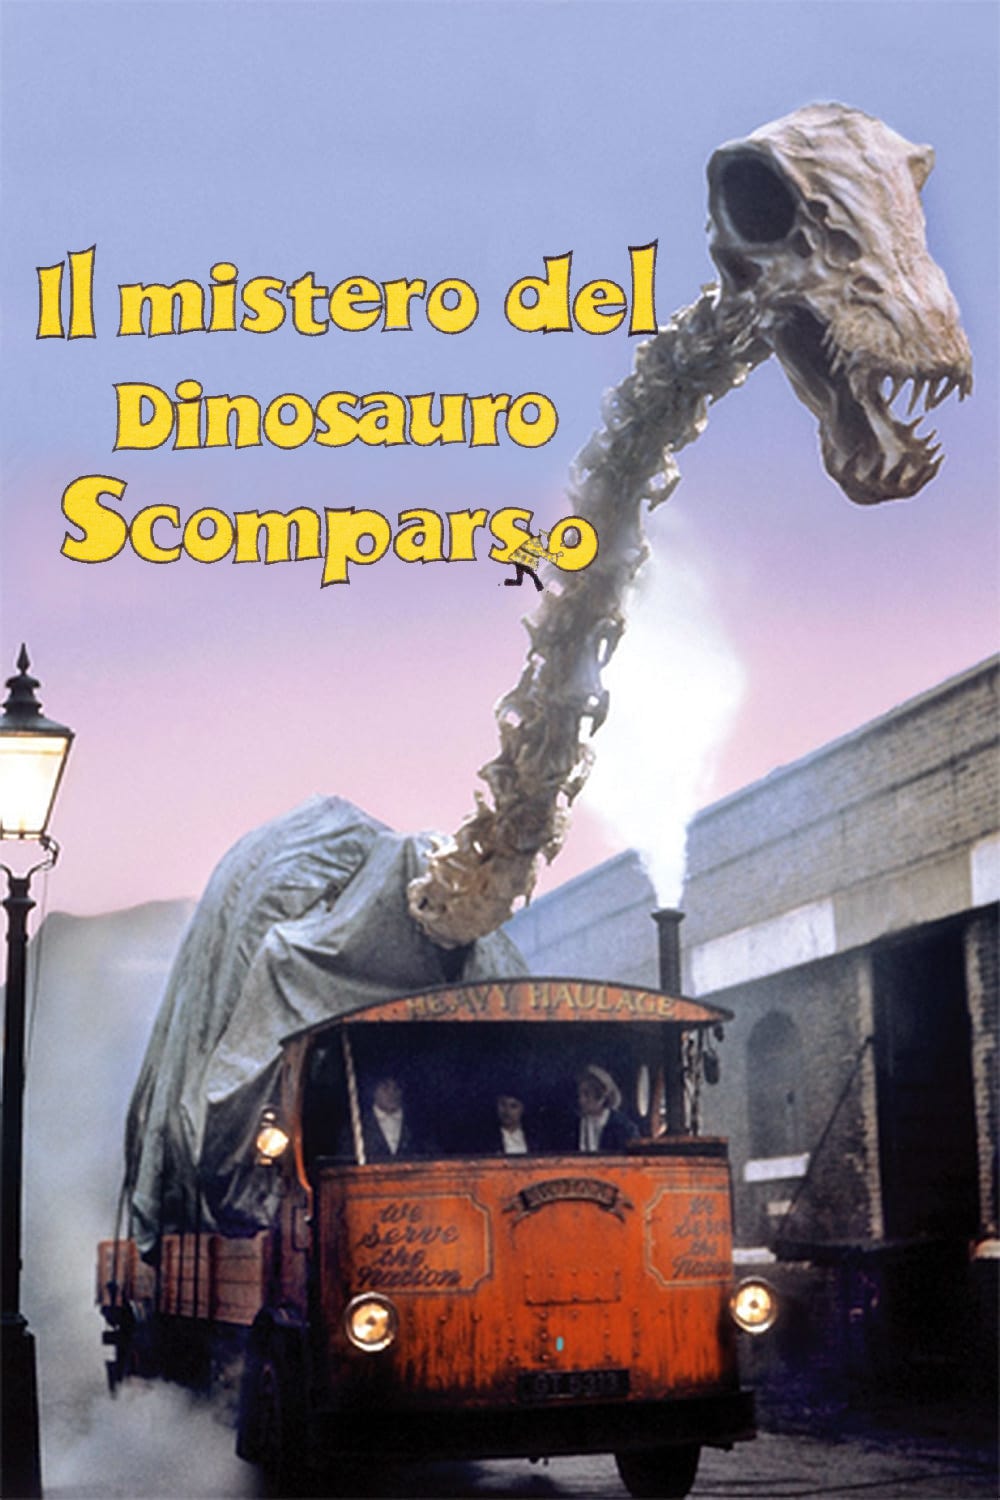 Il mistero del dinosauro scomparso (1975)